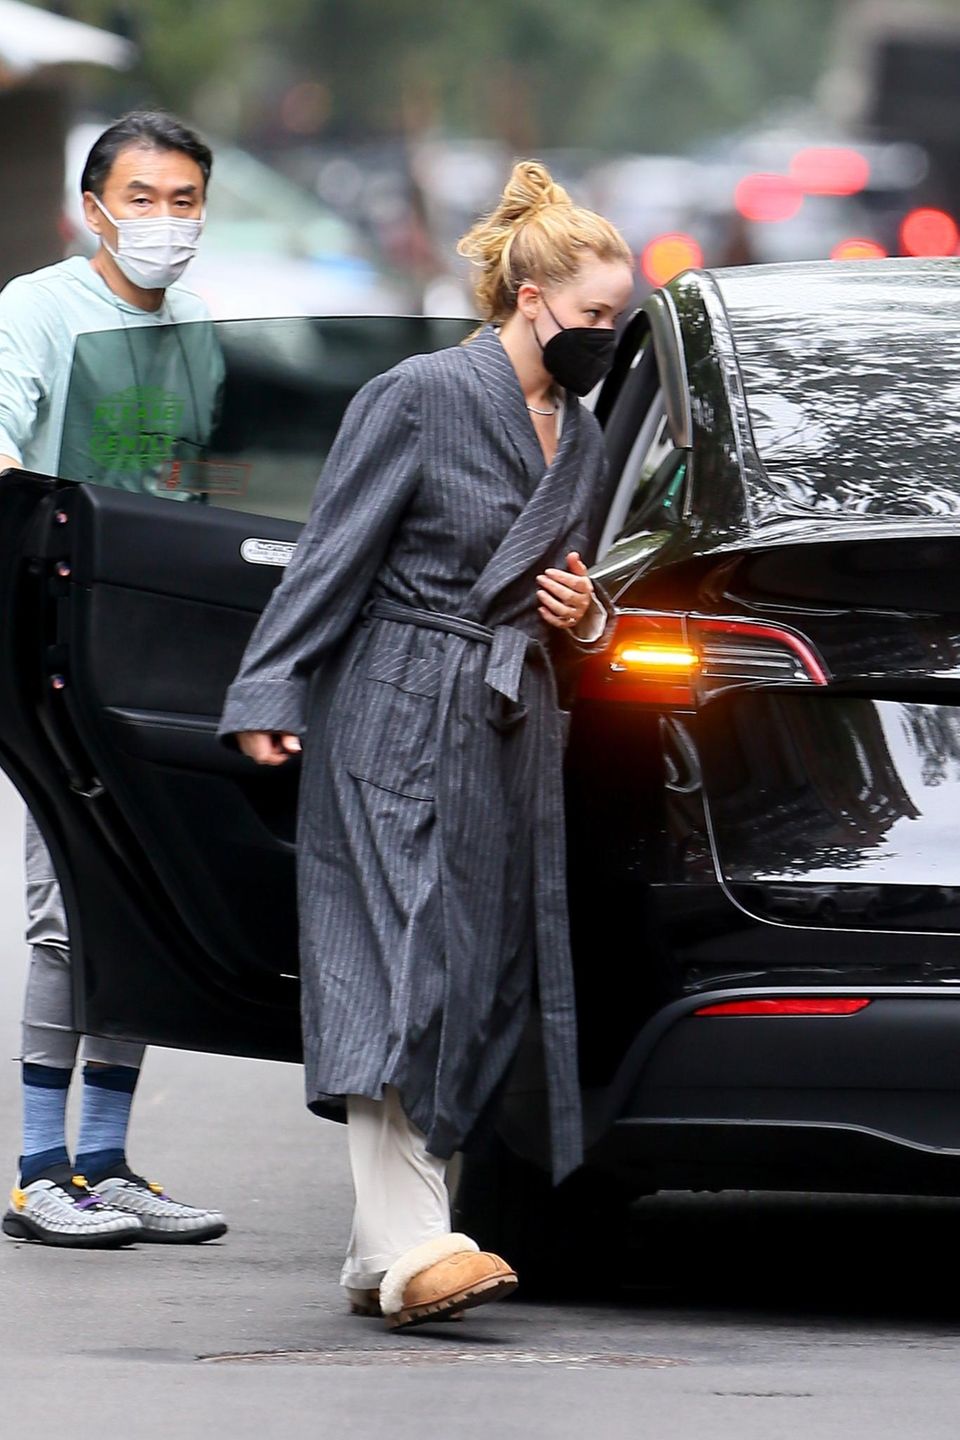 Bademantel, Pyjama, Hausschuhe – von einem stylischen Outfit kann man bei Jennifer Lawrences neusten Fotos auf den Straßen New Yorks nicht wirklich sprechen. Auf dem Weg vom ihrem Appartement zum Auto setzt sie lieber auf Bequemlichkeit. Wie sympathisch!